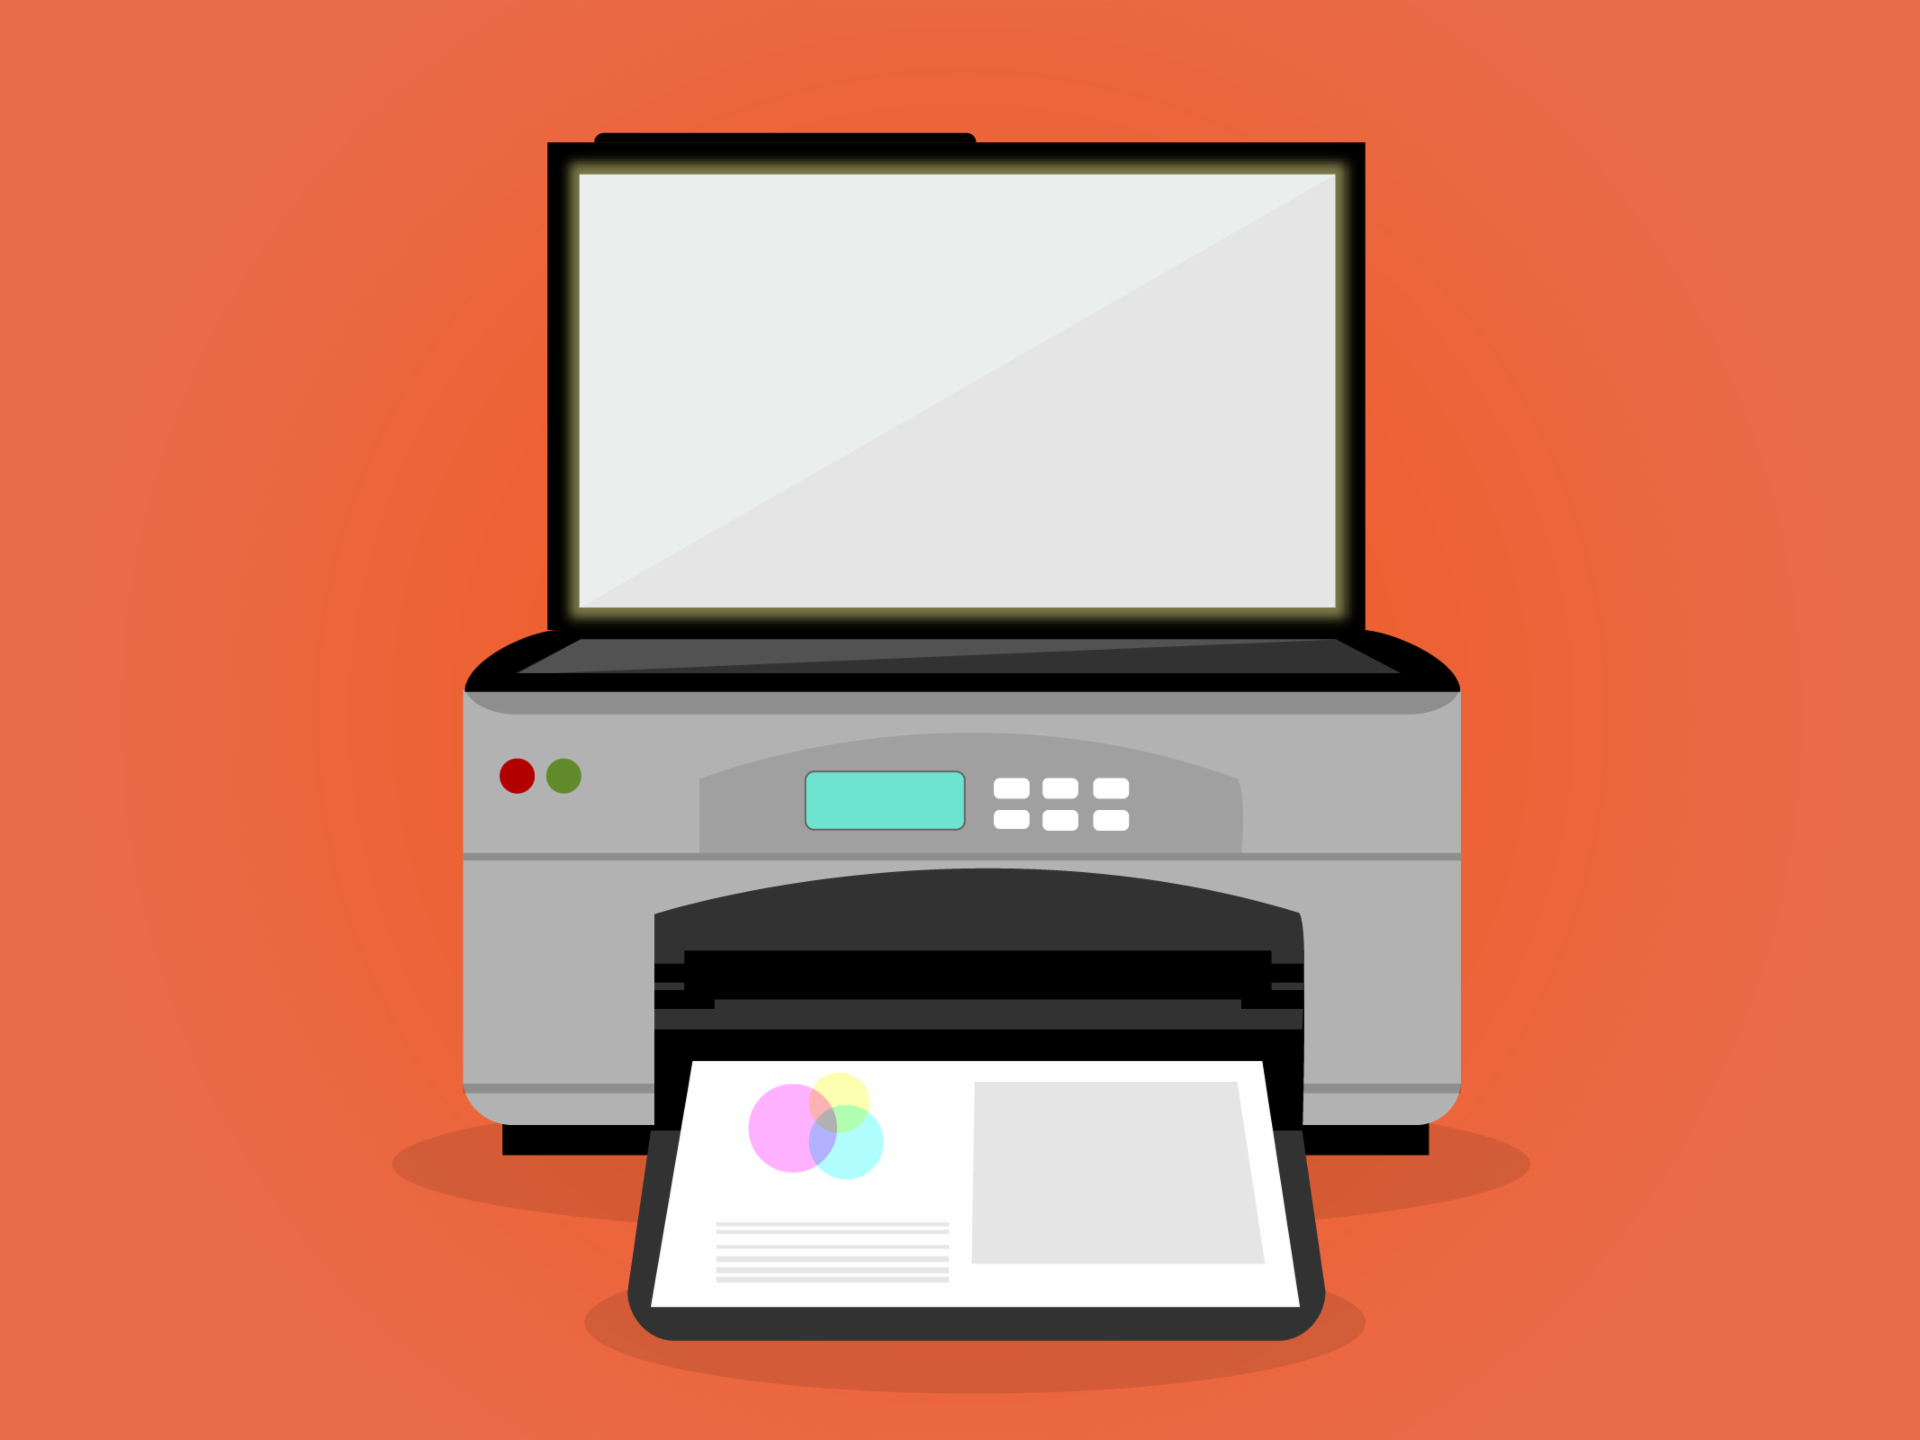 Impresora y escáner, impresra multifuncional, periférico de un computador de eescritorio.